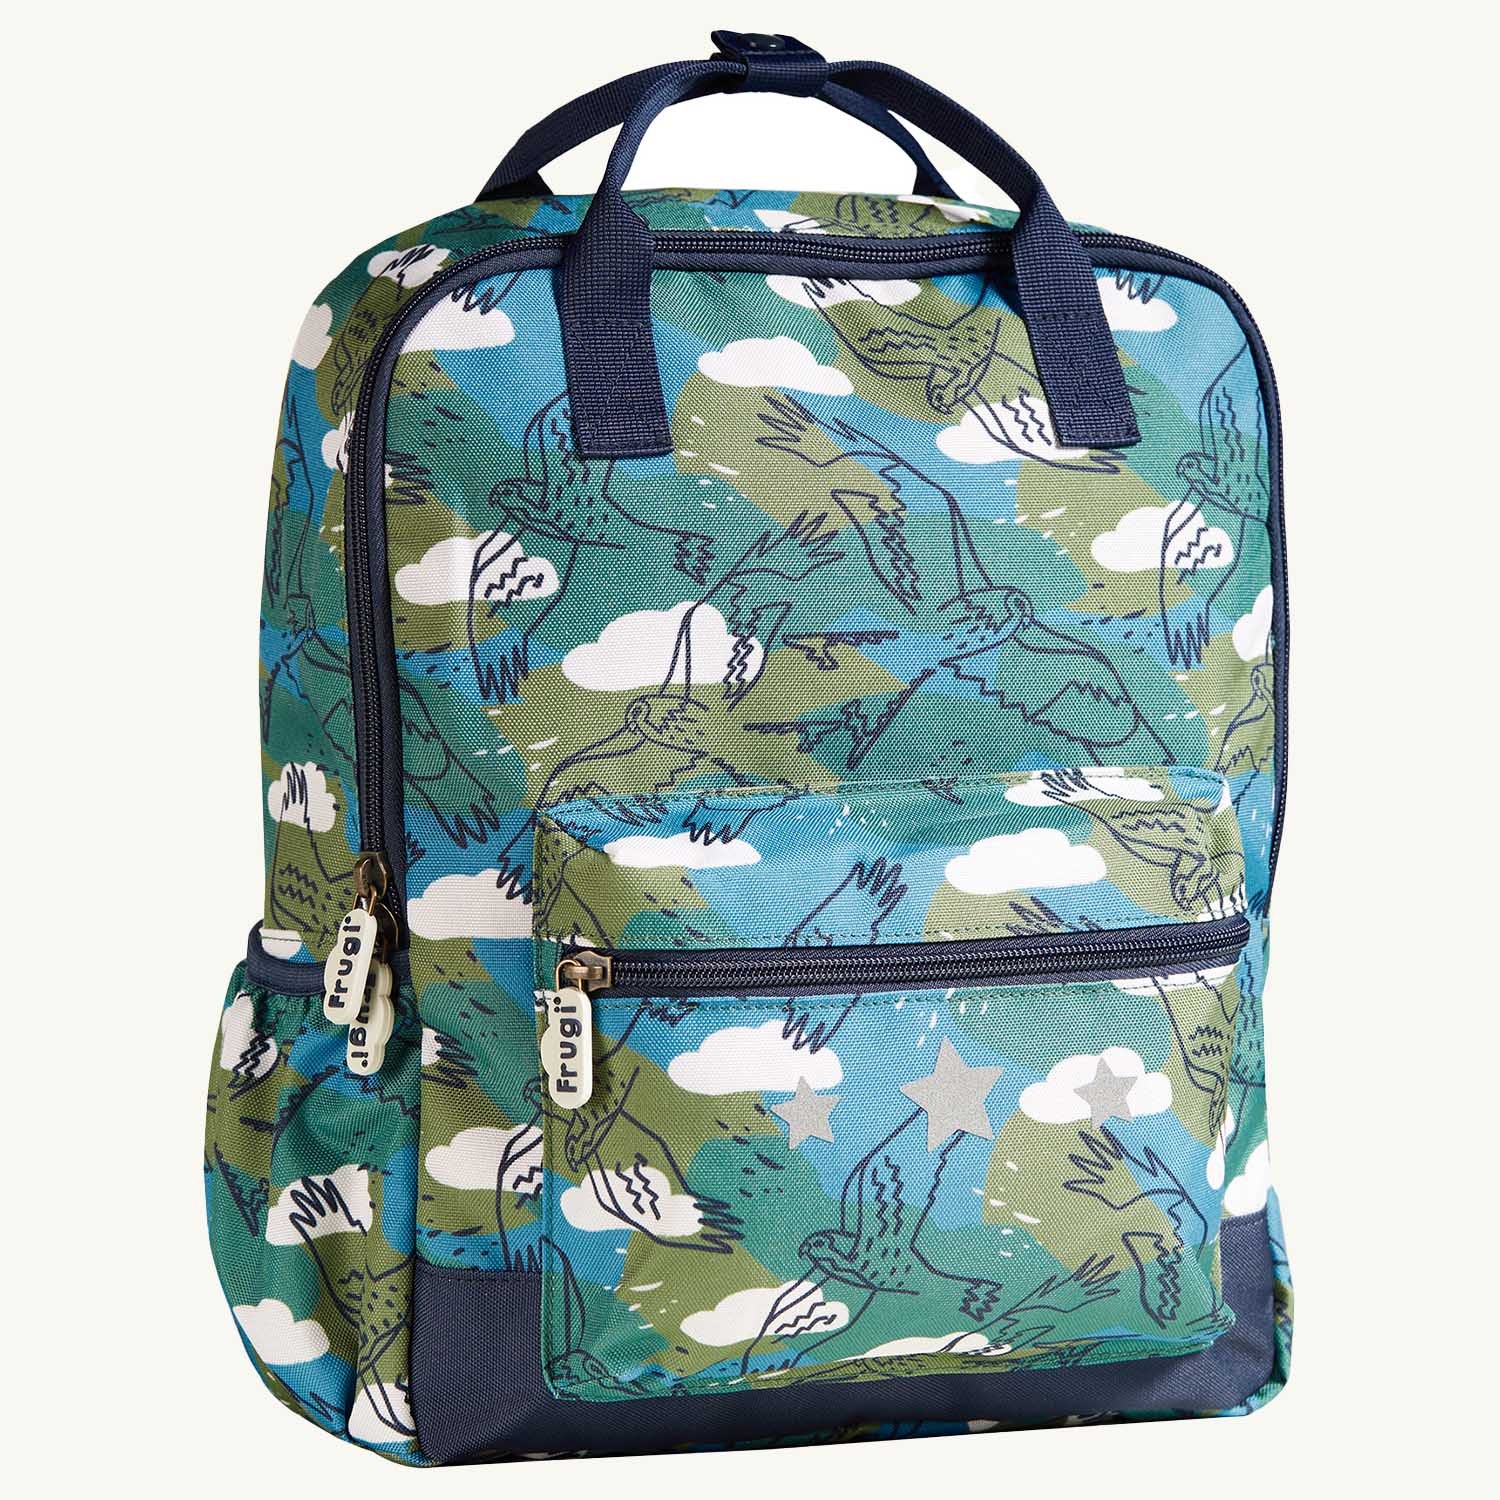 Frugi Explorers Backpack - Birds of Prey